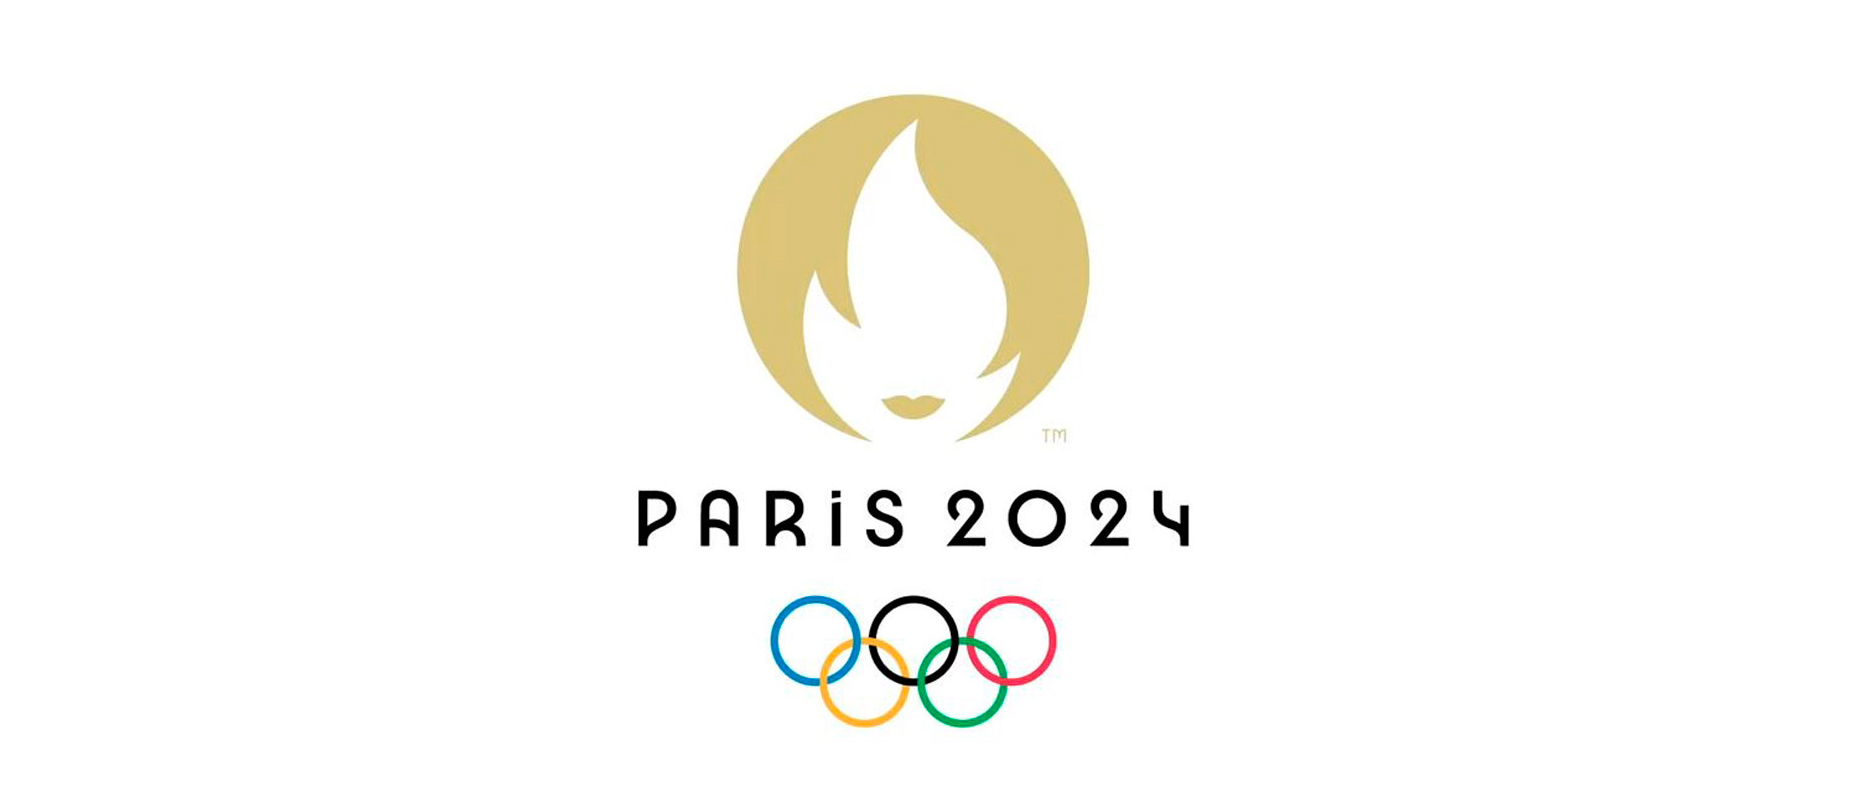 олимпиада в париже 2024 логотип эмблема